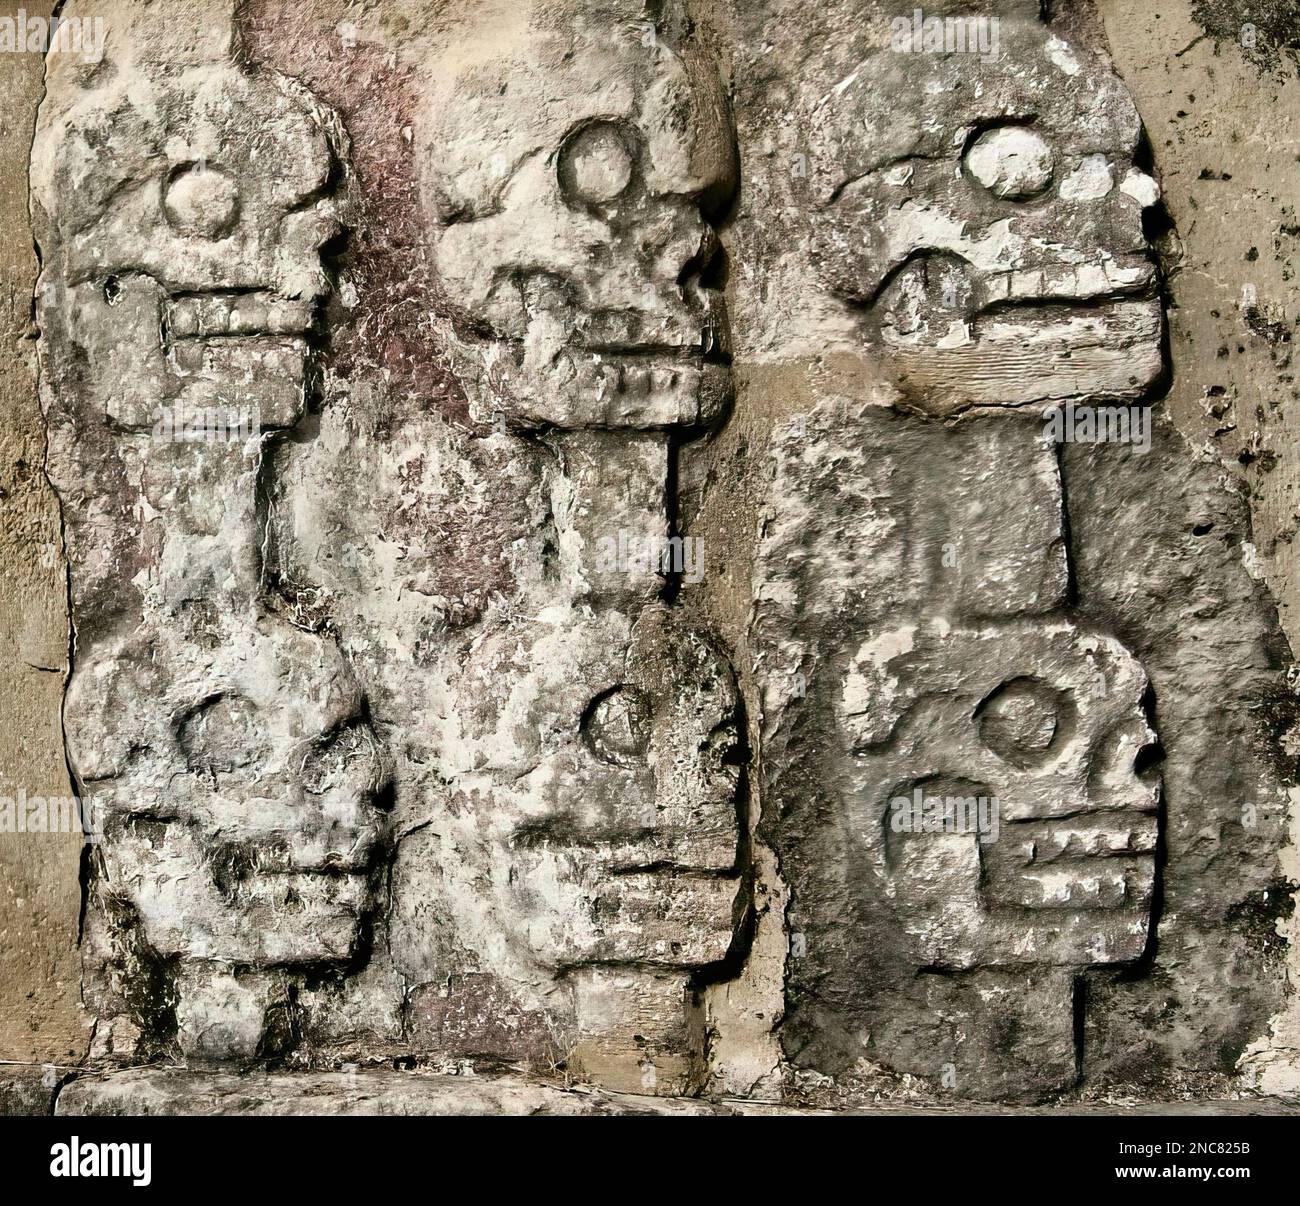 L'impressionnant mur de crânes (les Tzompantli) dans l'ancienne ville maya de Chichen Itza au Mexique. Banque D'Images